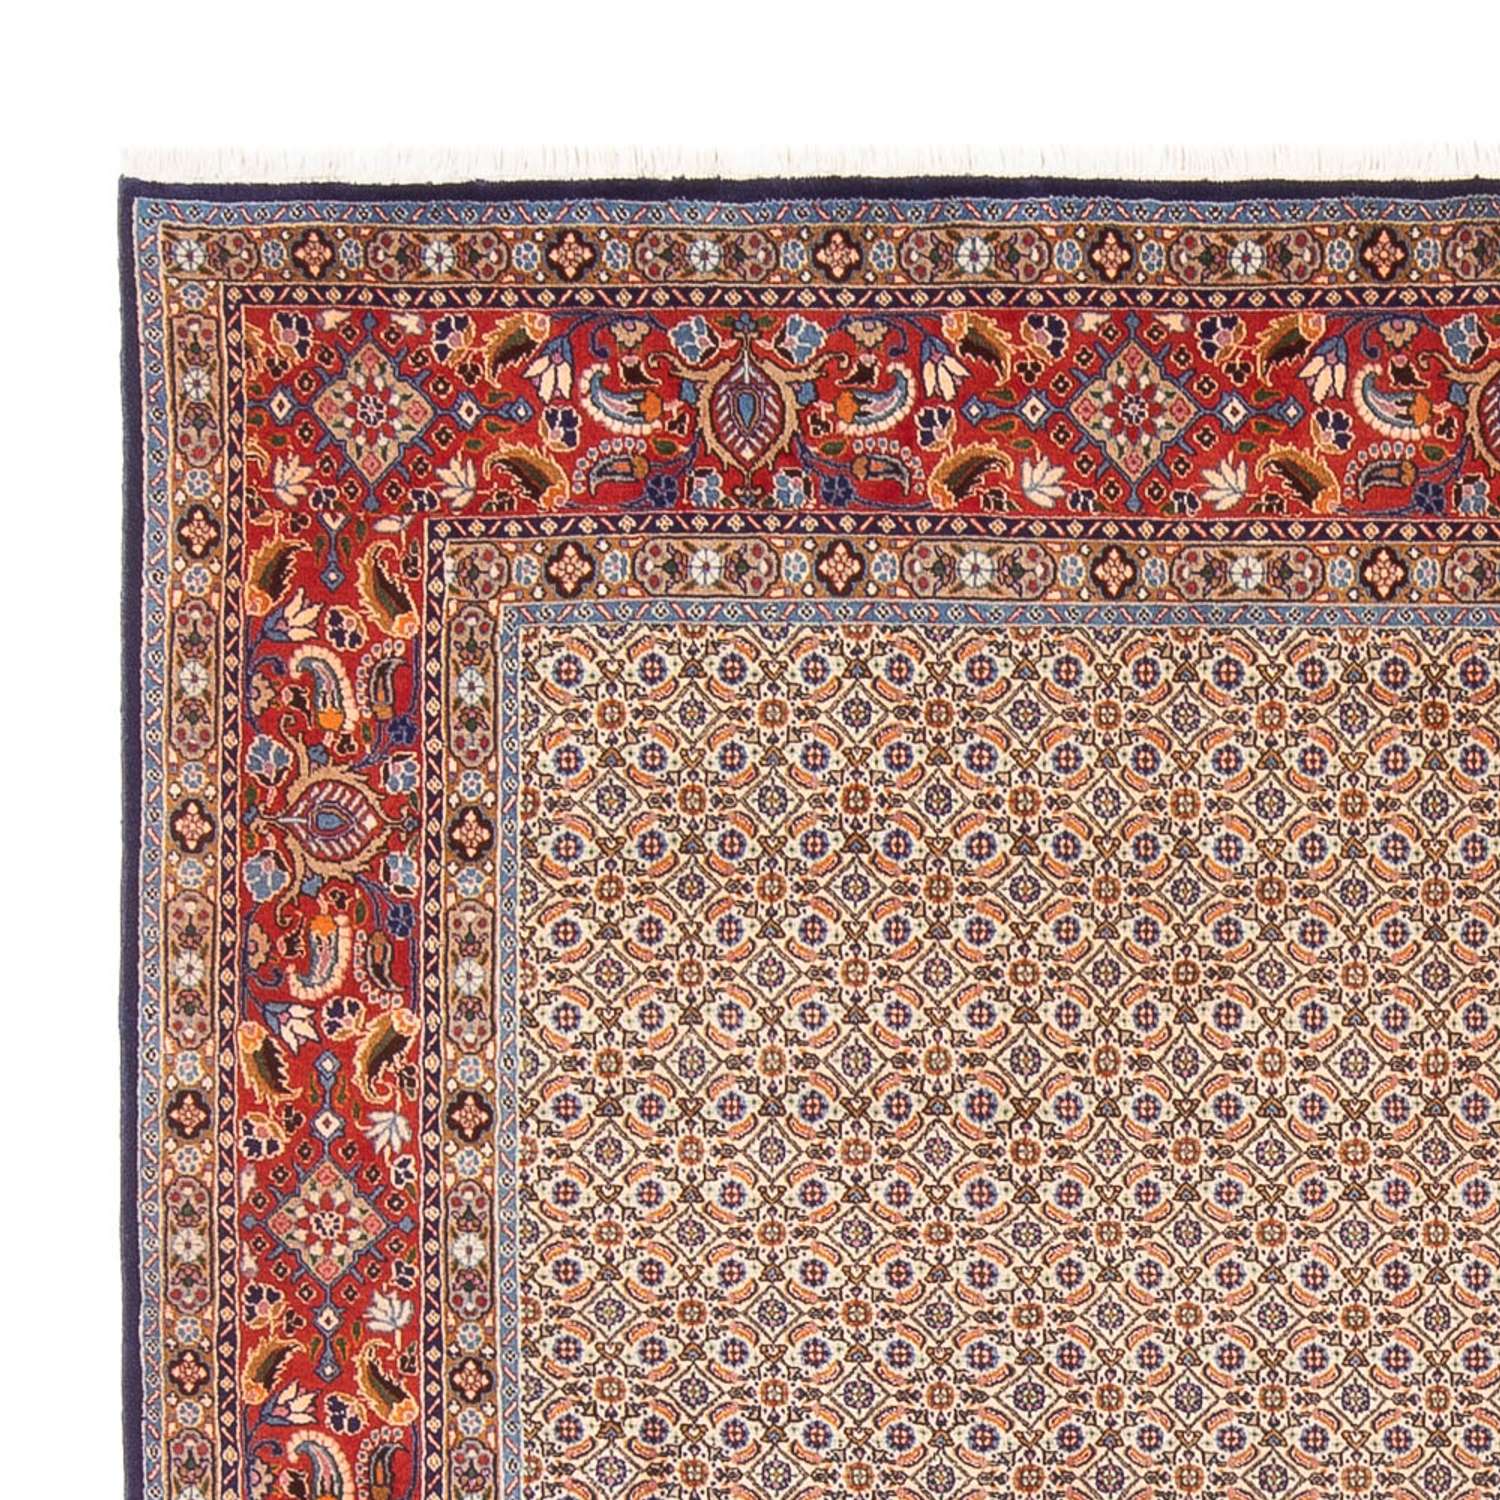 Persisk teppe - klassisk square  - 242 x 247 cm - mørk beige